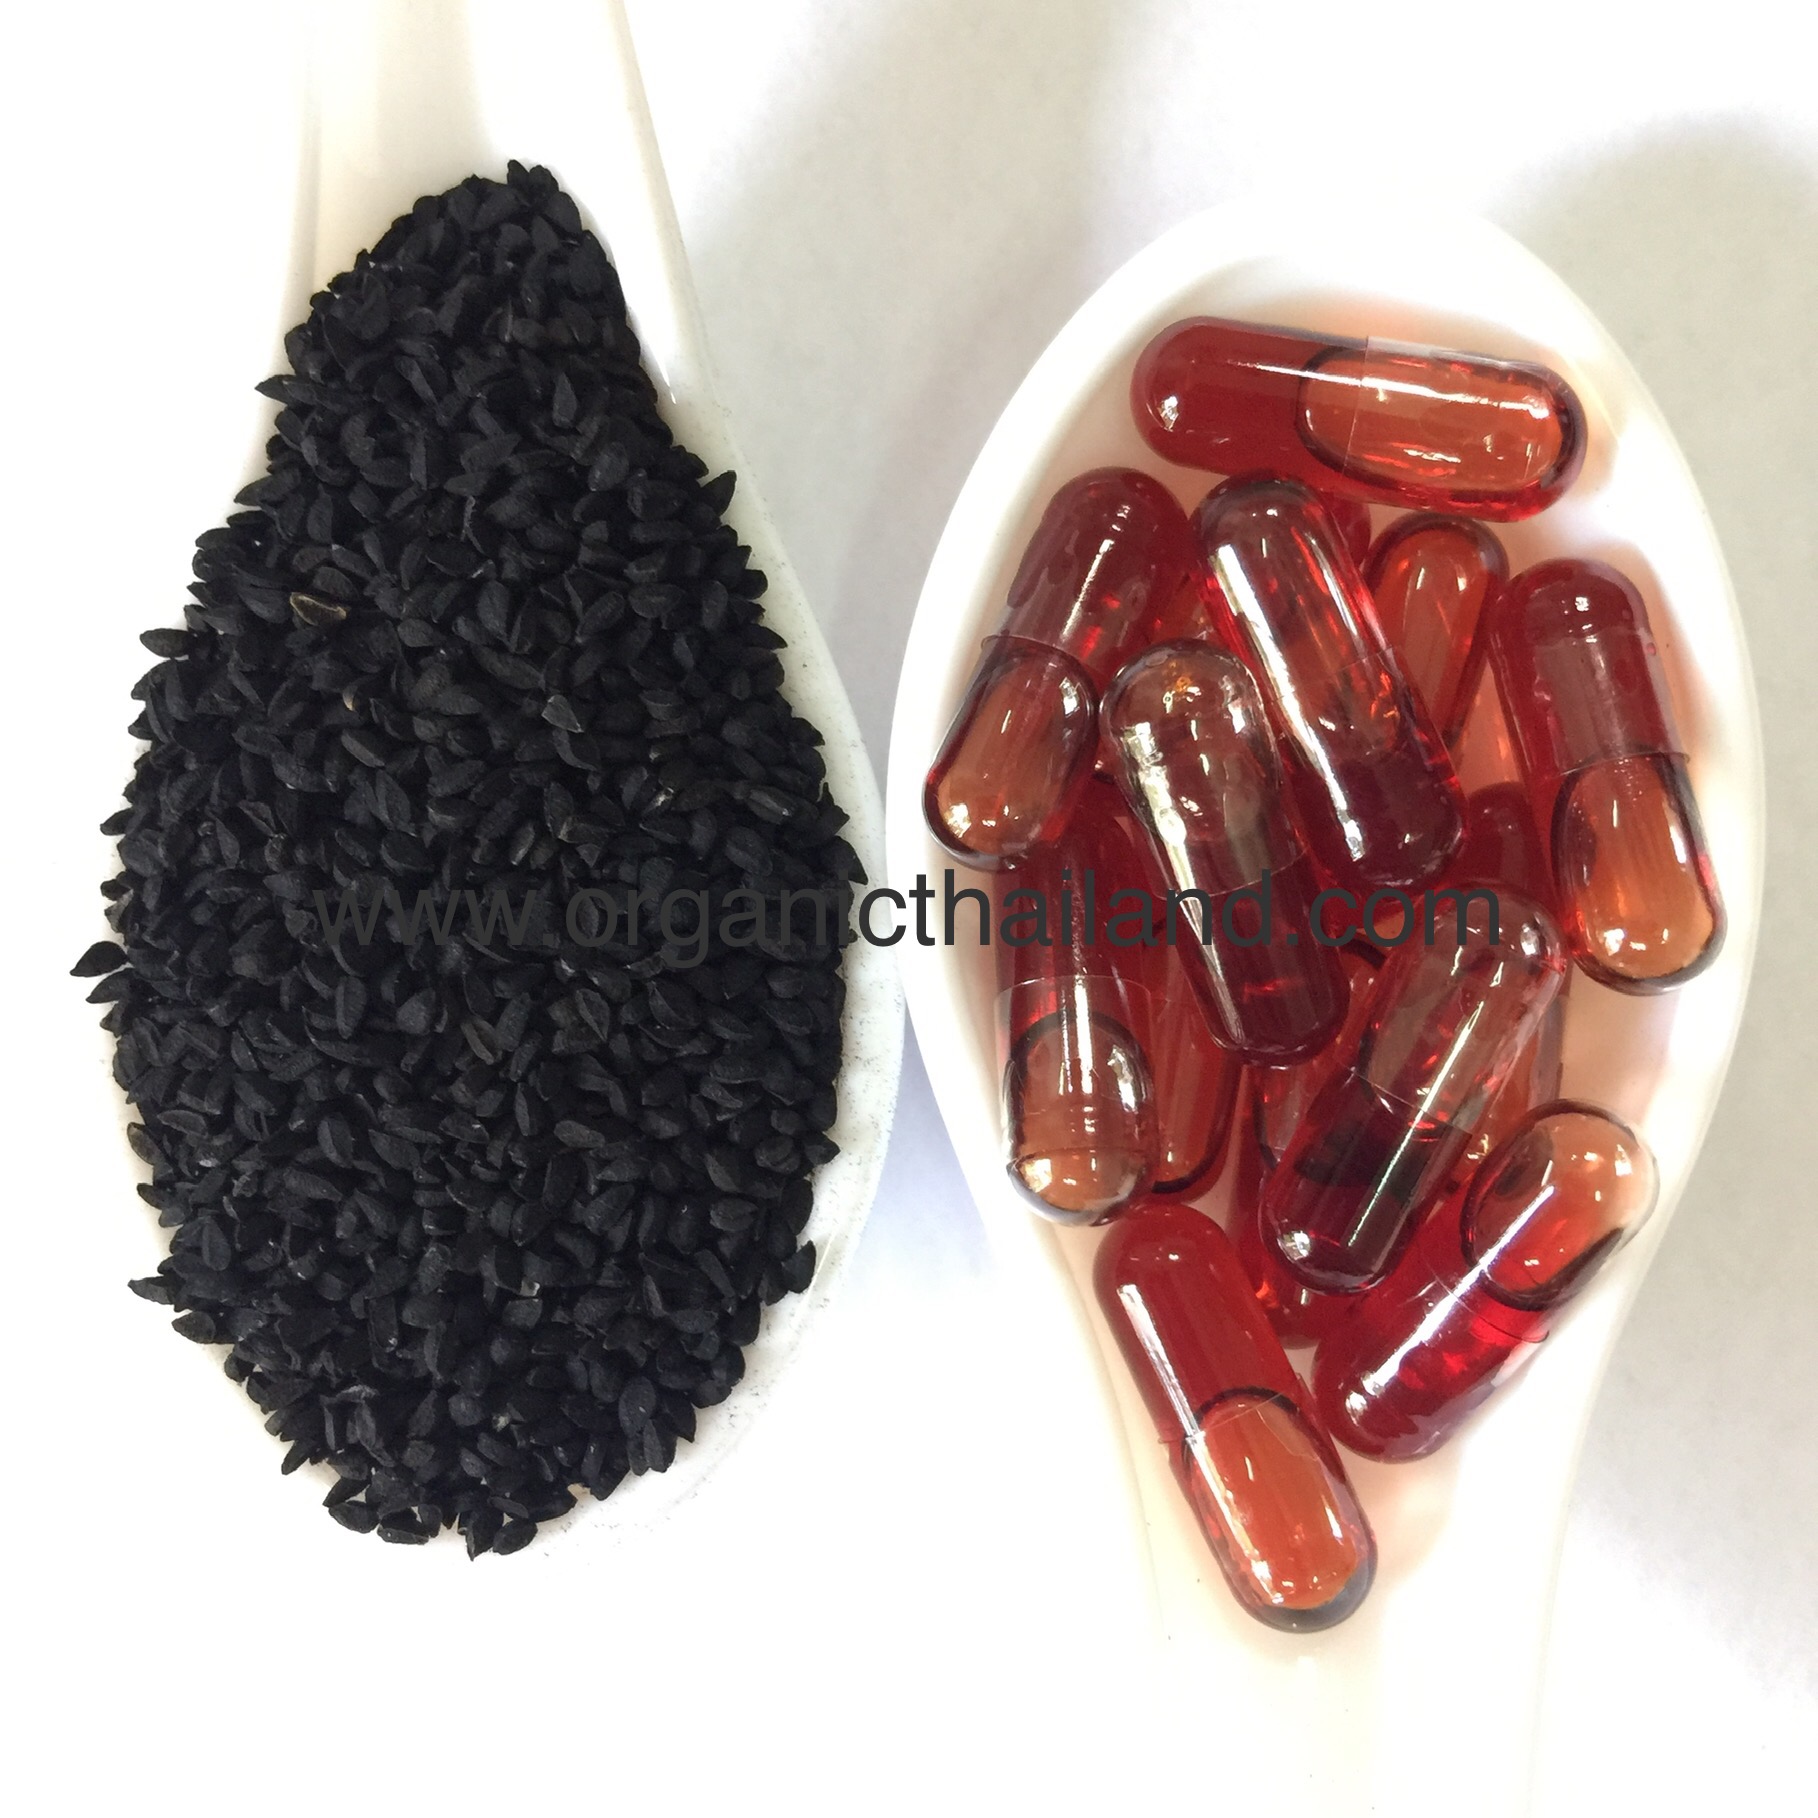 Virgin Black Seed Oil 1000capsules